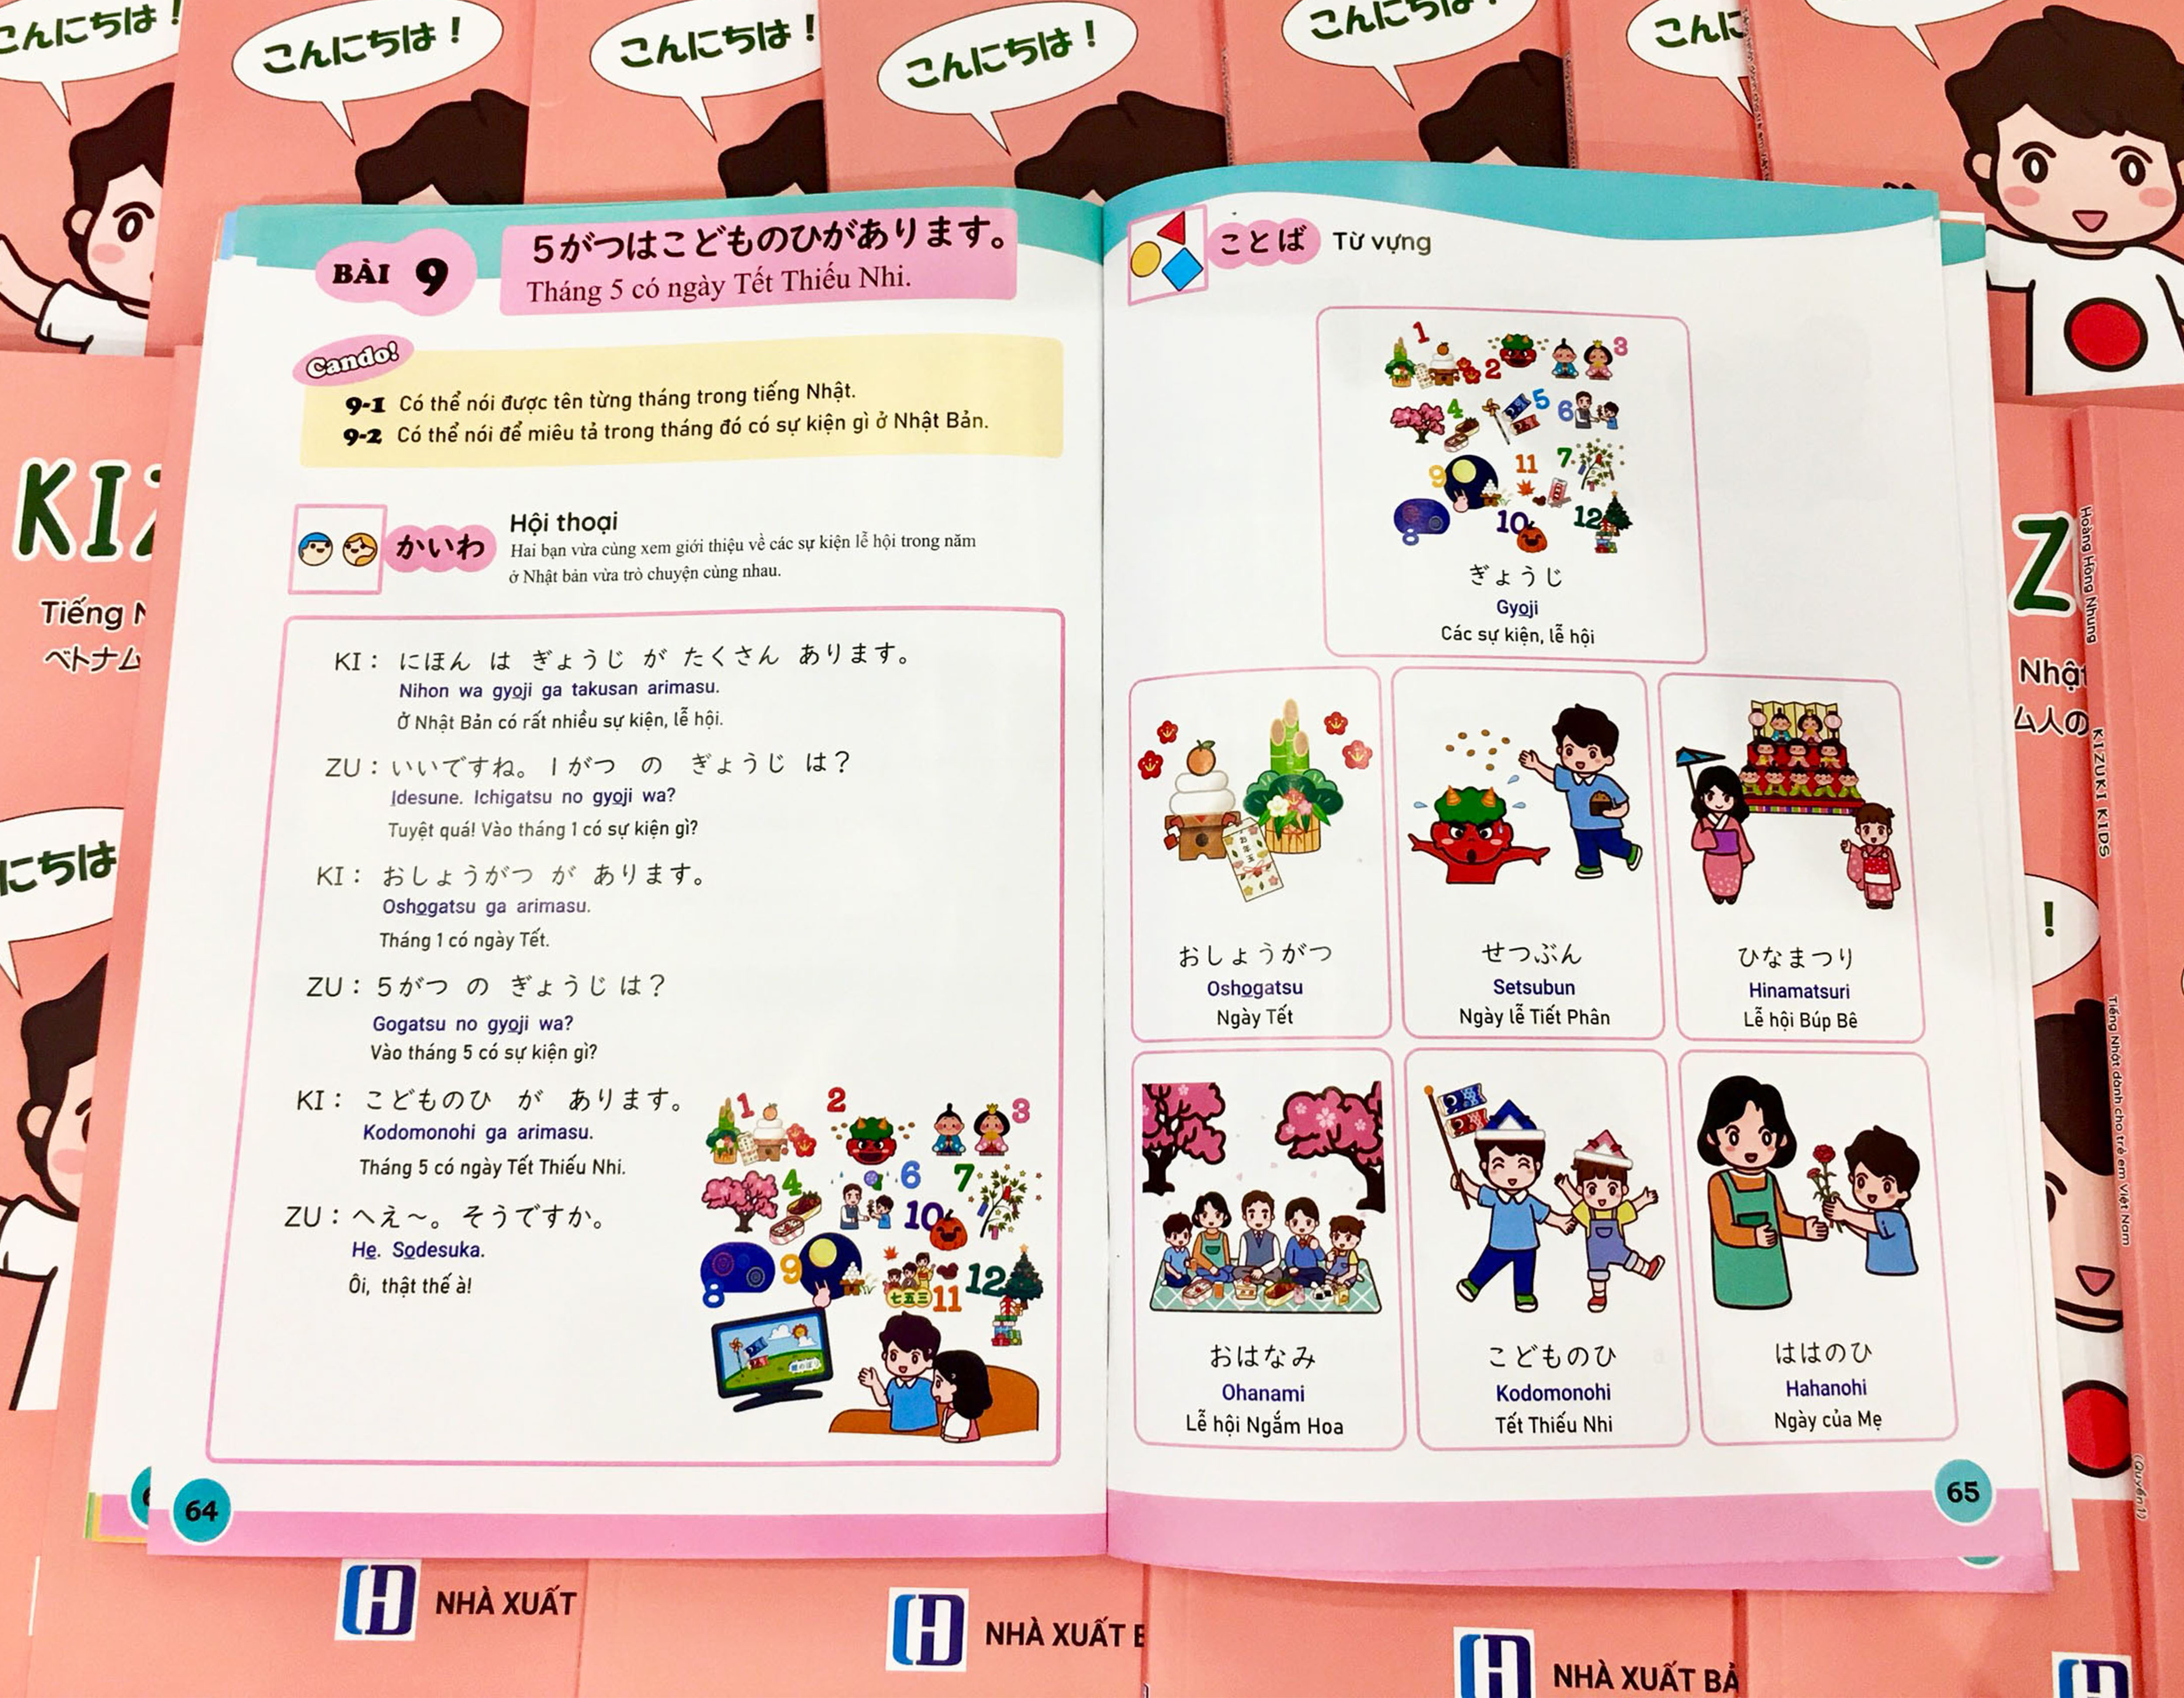 Sách KIZUKI KIDS - Tiếng Nhật dành cho trẻ em Việt Nam (quyển 1)